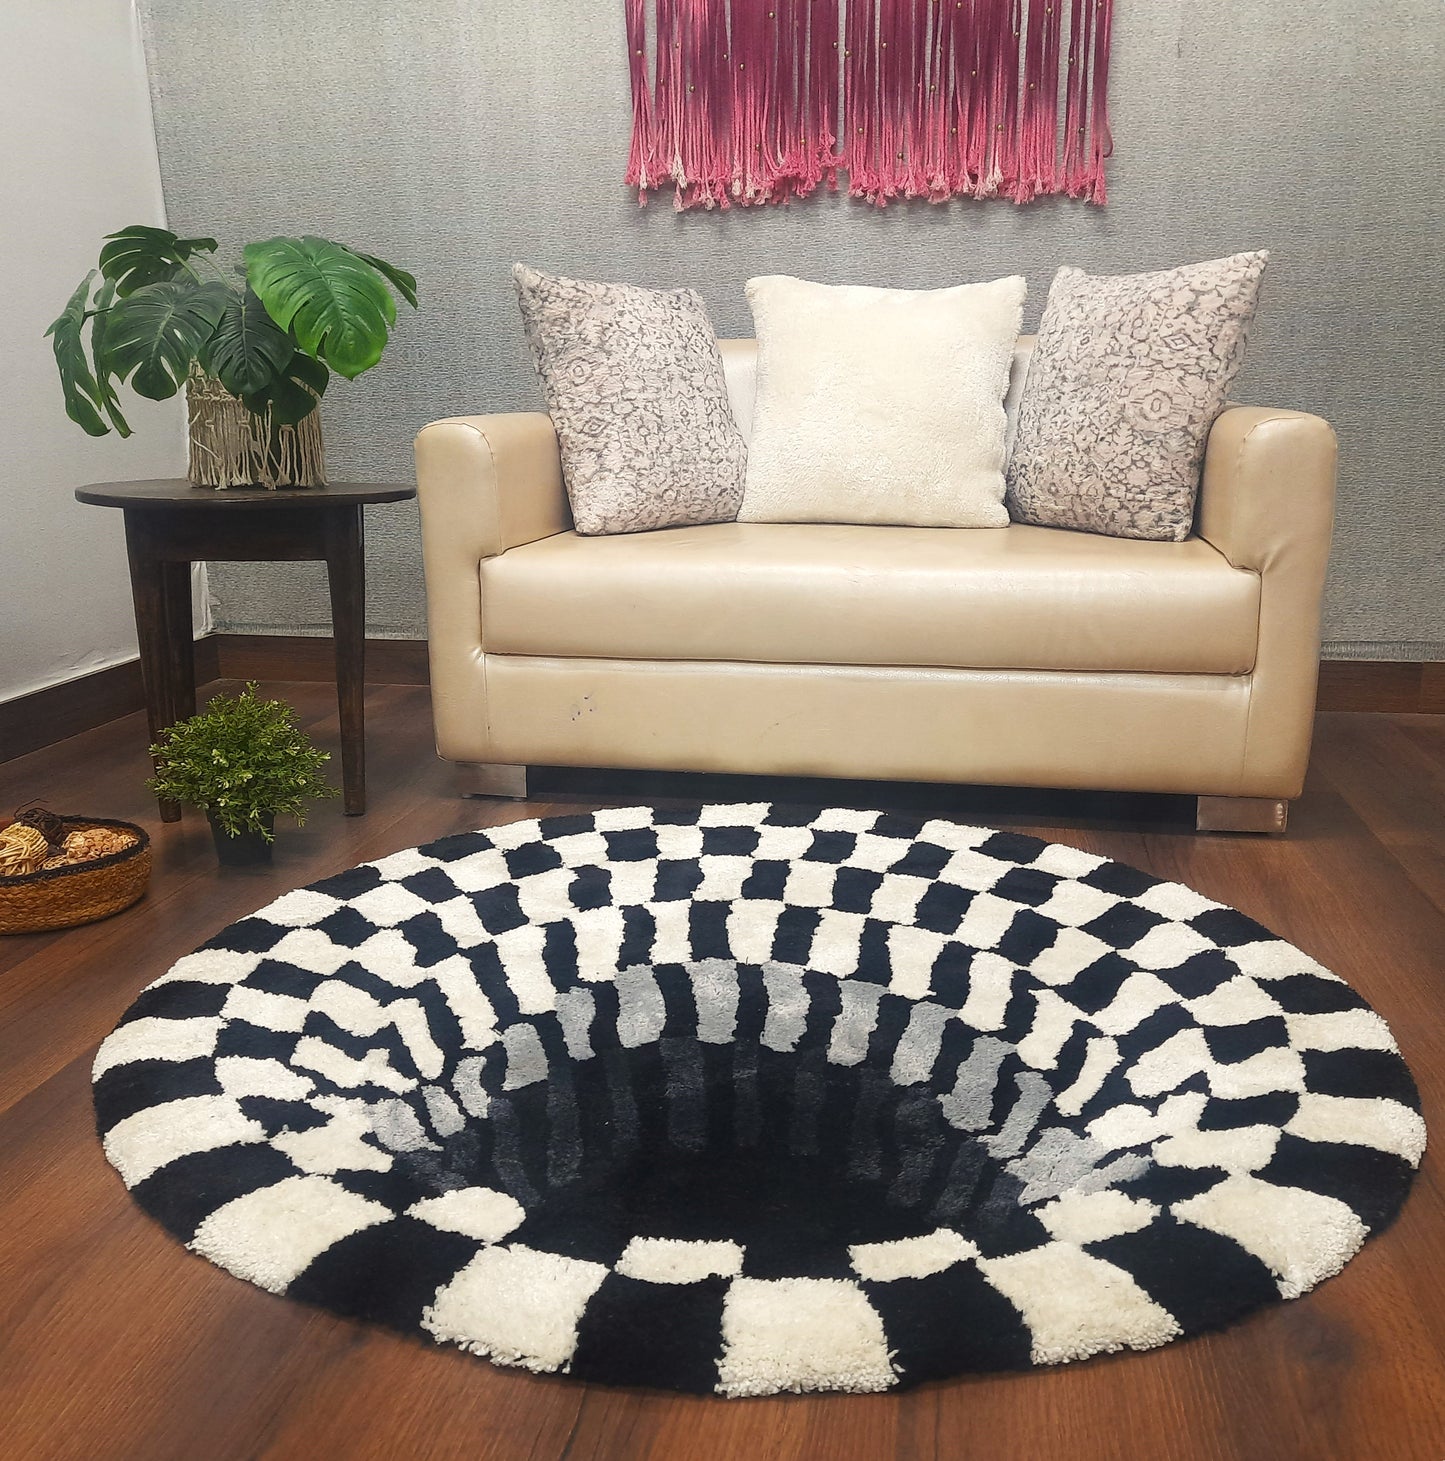 Avioni Home Vortex 3D Illusion Soft Plush Micro Yarn Round Carpet In Black & White| Soft, Non-Slip, Easy to Clean